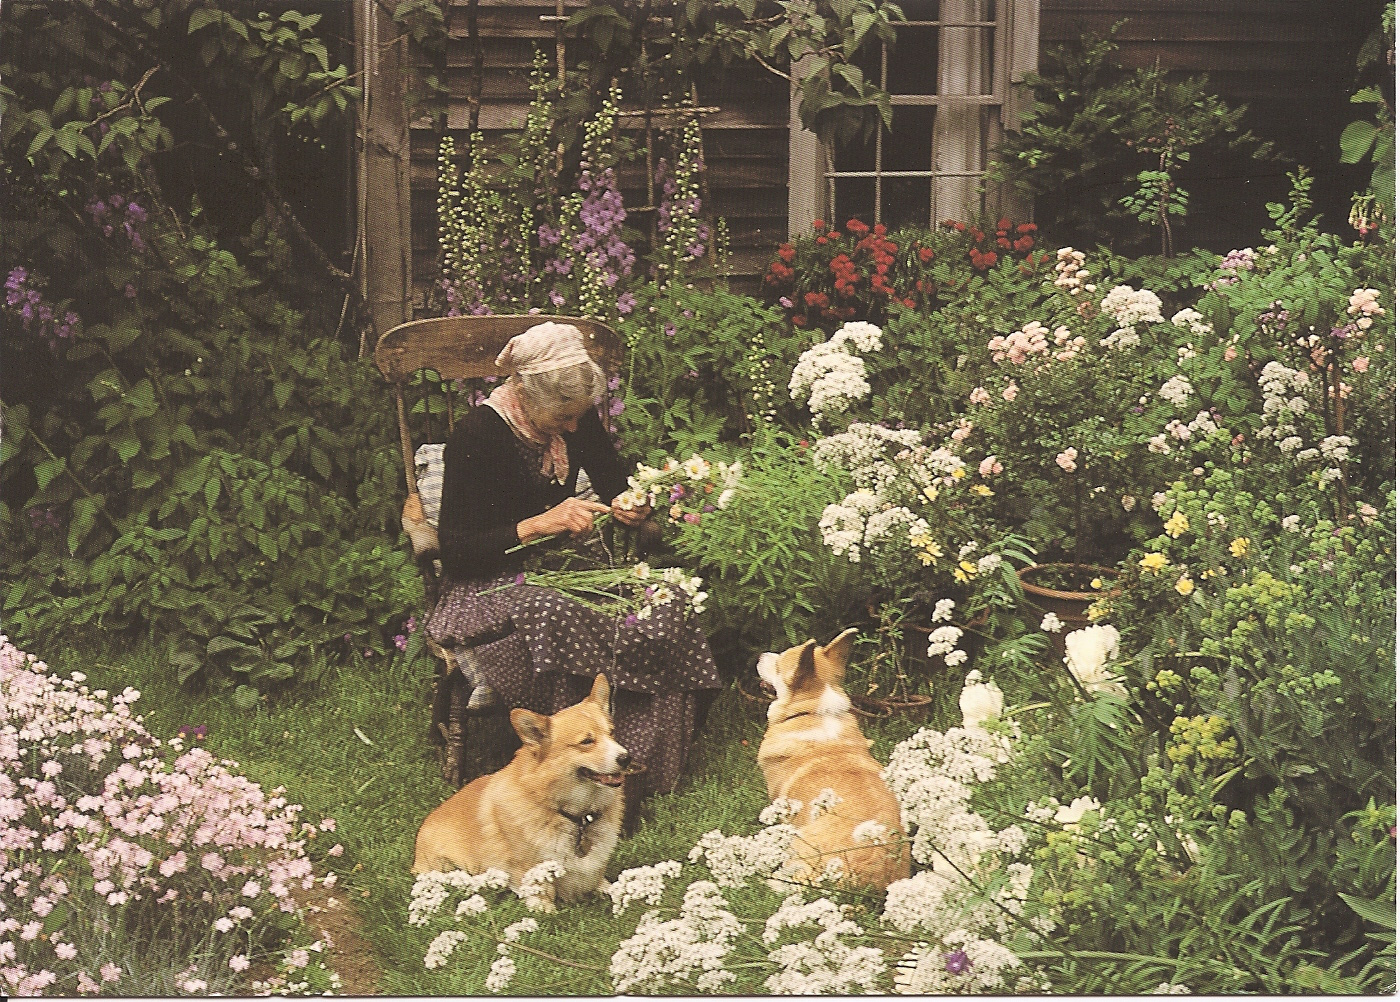 Cuộc sống an yên của cụ bà 92 tuổi bên khu vườn tự tay trồng hoa, rau quả ở vùng thôn quê - Ảnh 6.